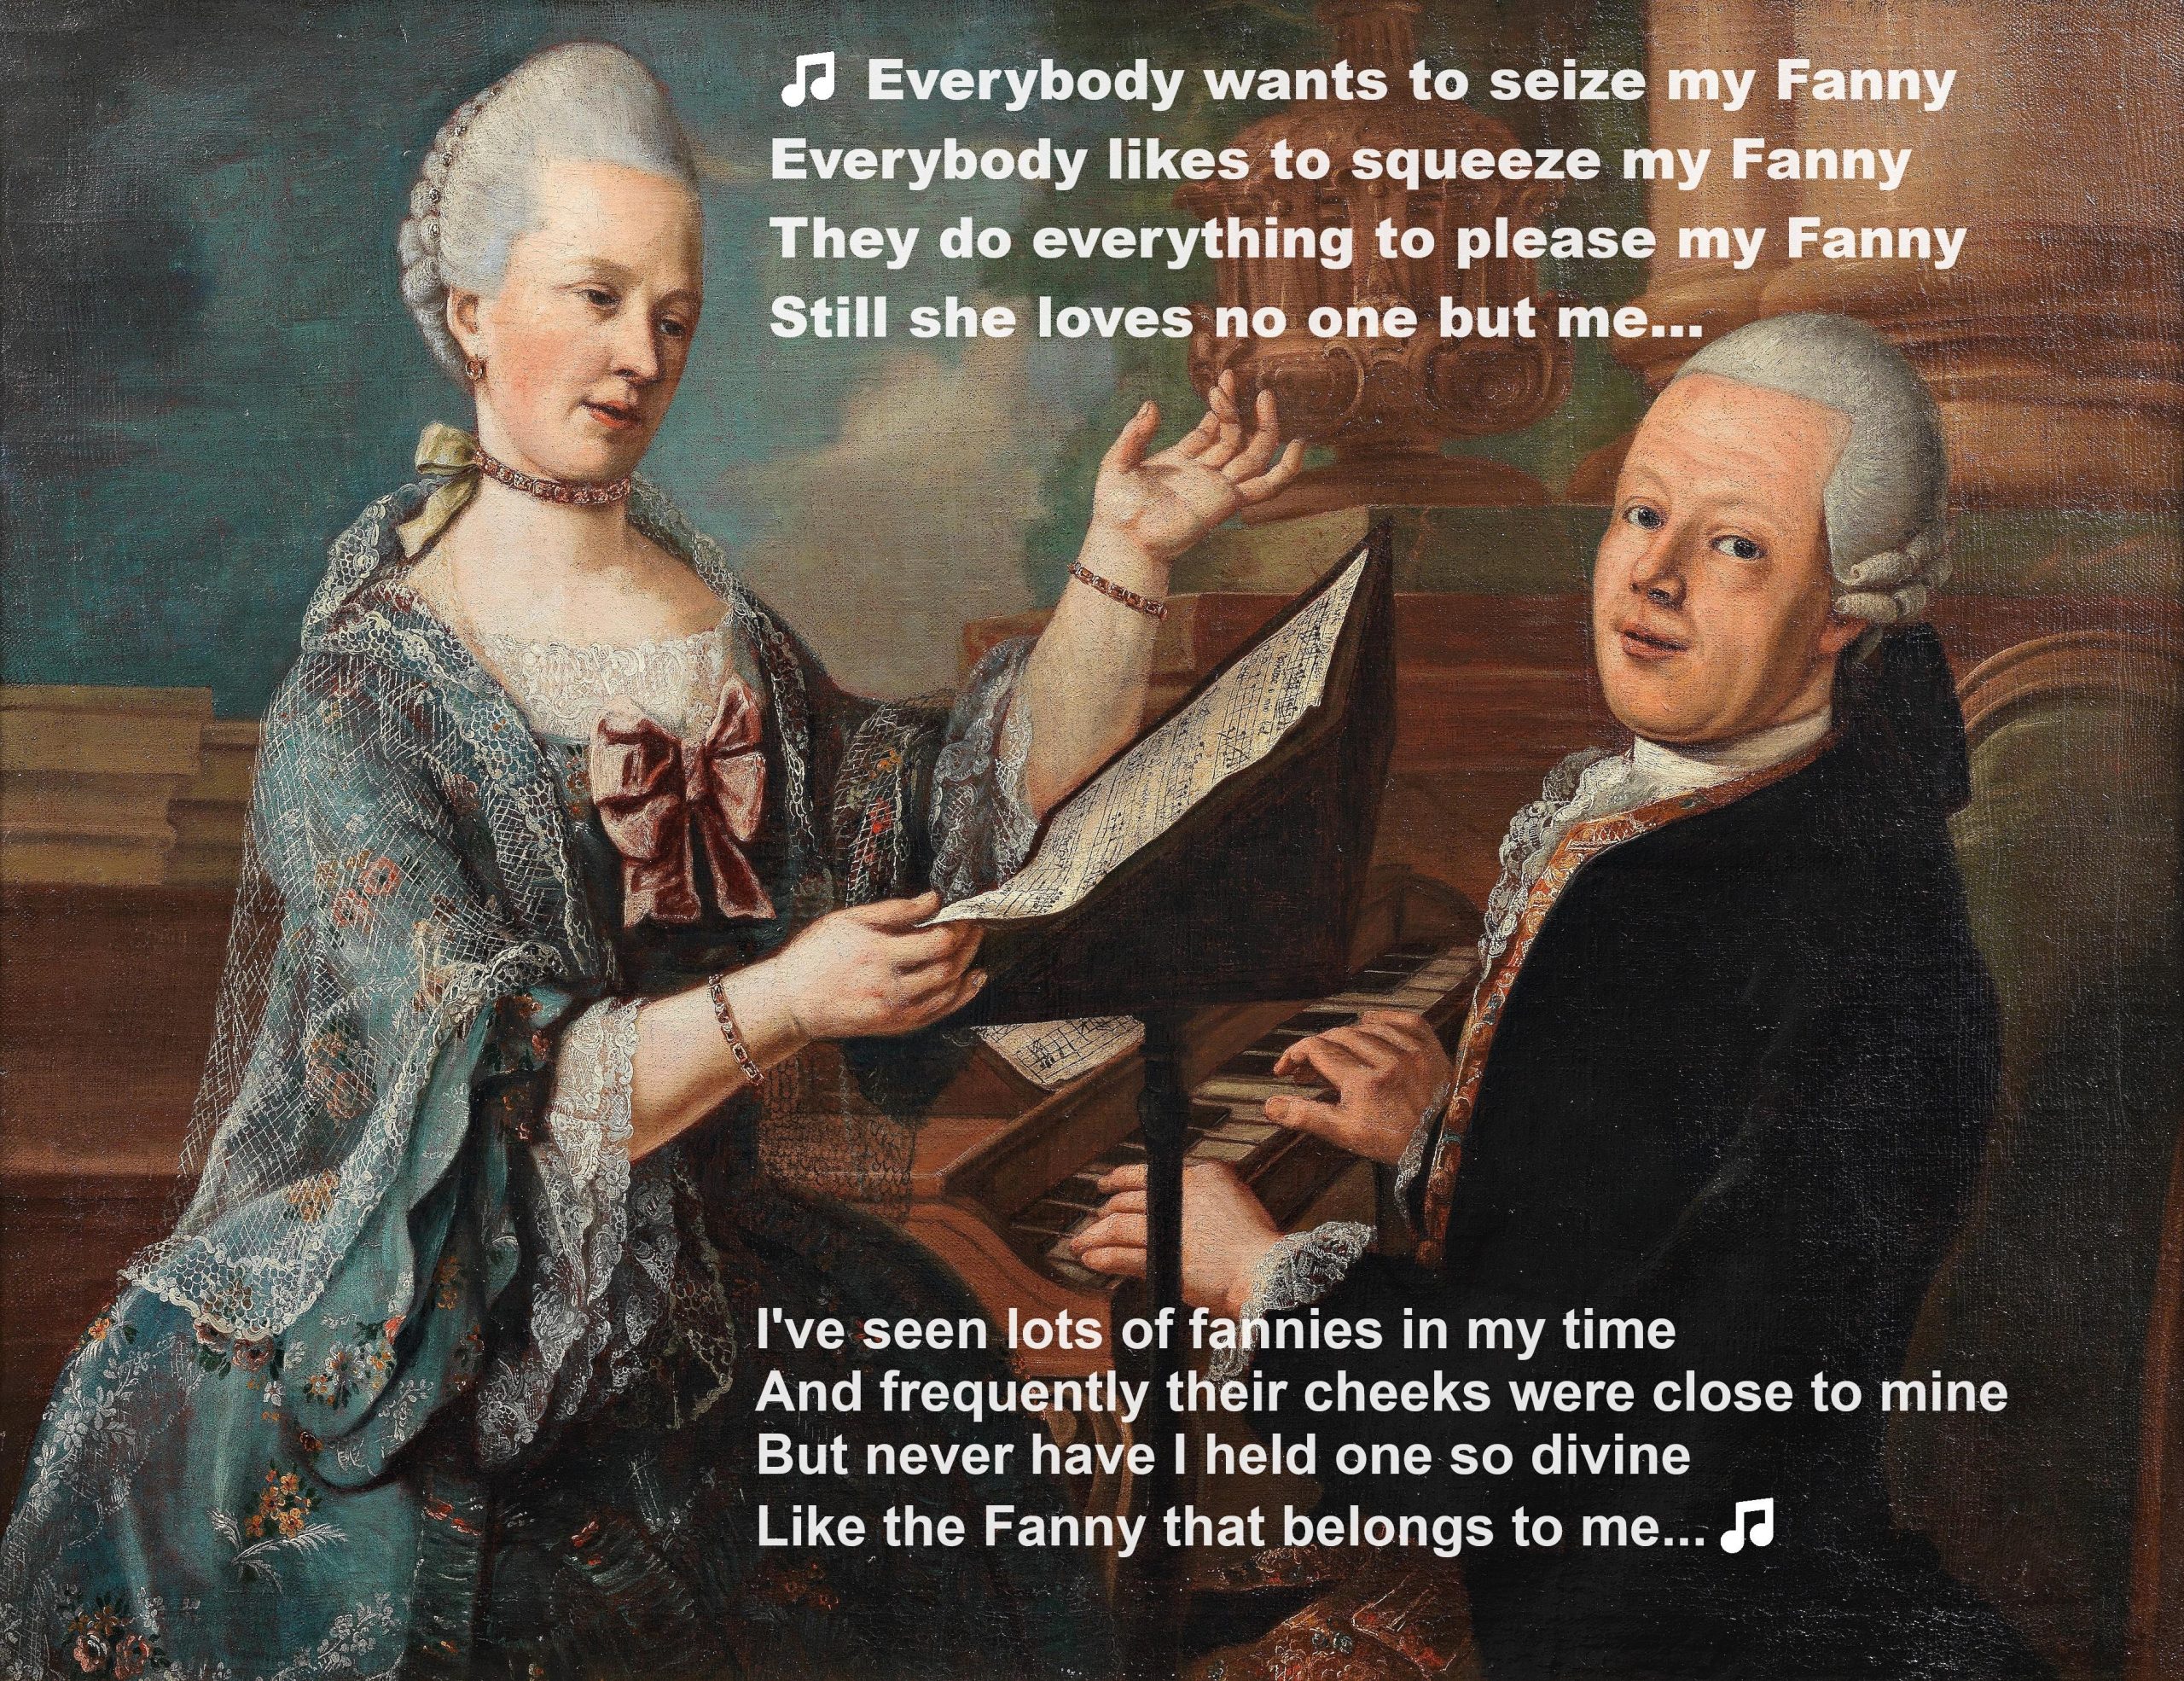 My Fanny